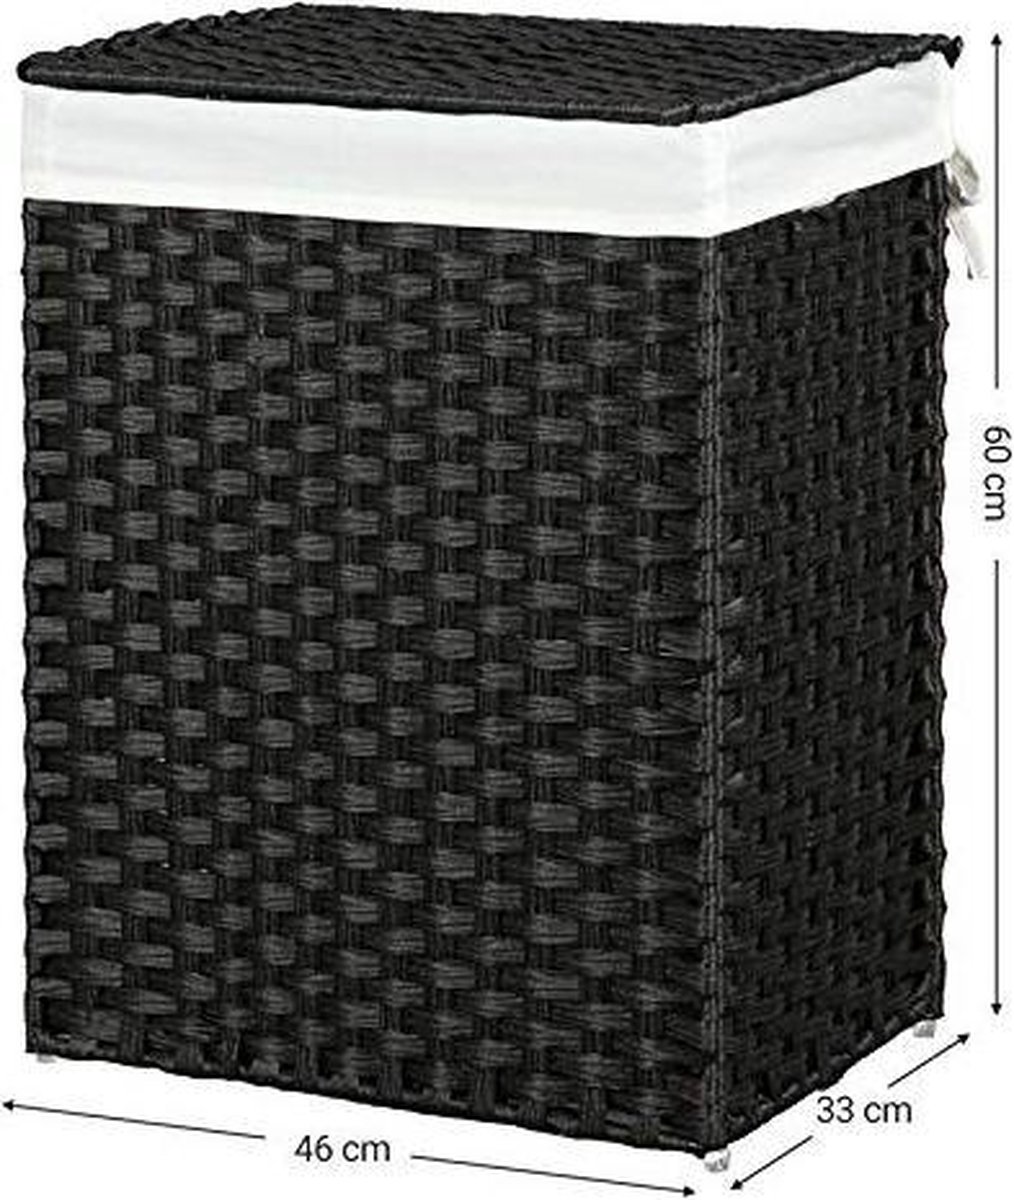 Trend24 Wasmand - Wasmanden met deksel - Wasmand met deksel - Opbergbox - Opbergmand - 46 x 33 x 60 cm - Zwart